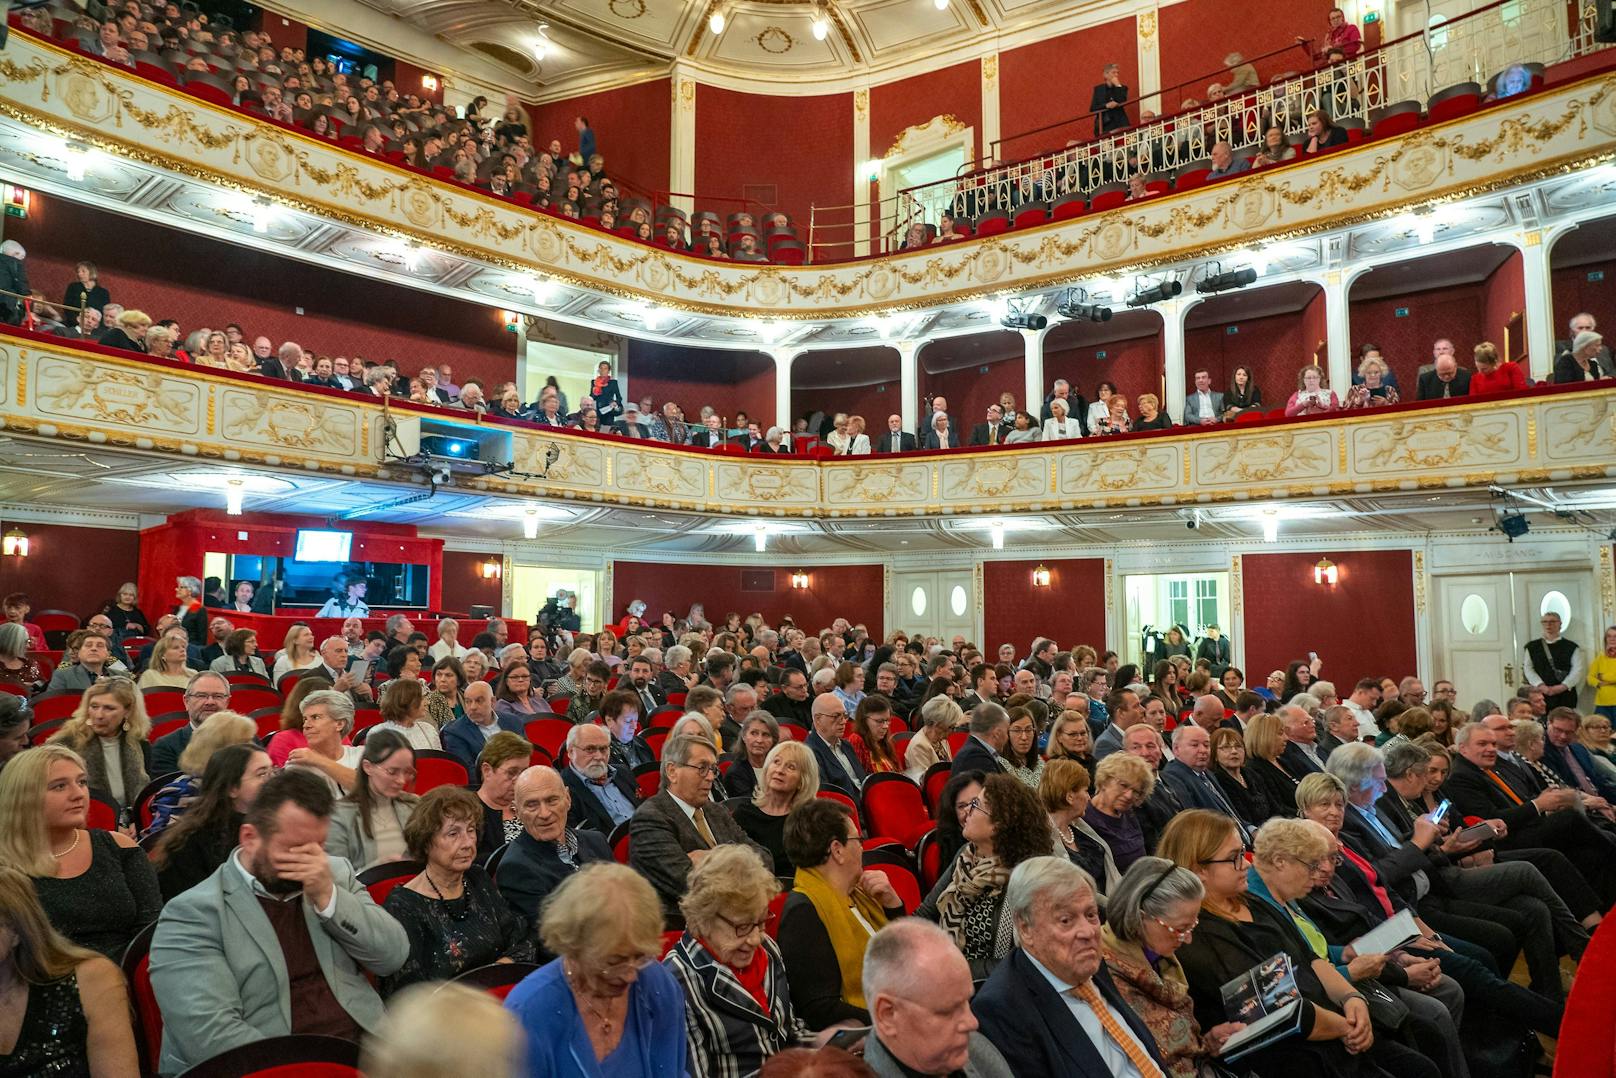 Volles Haus in Baden! Großer Andrang bei der Premiere des Musicals "Titanic"